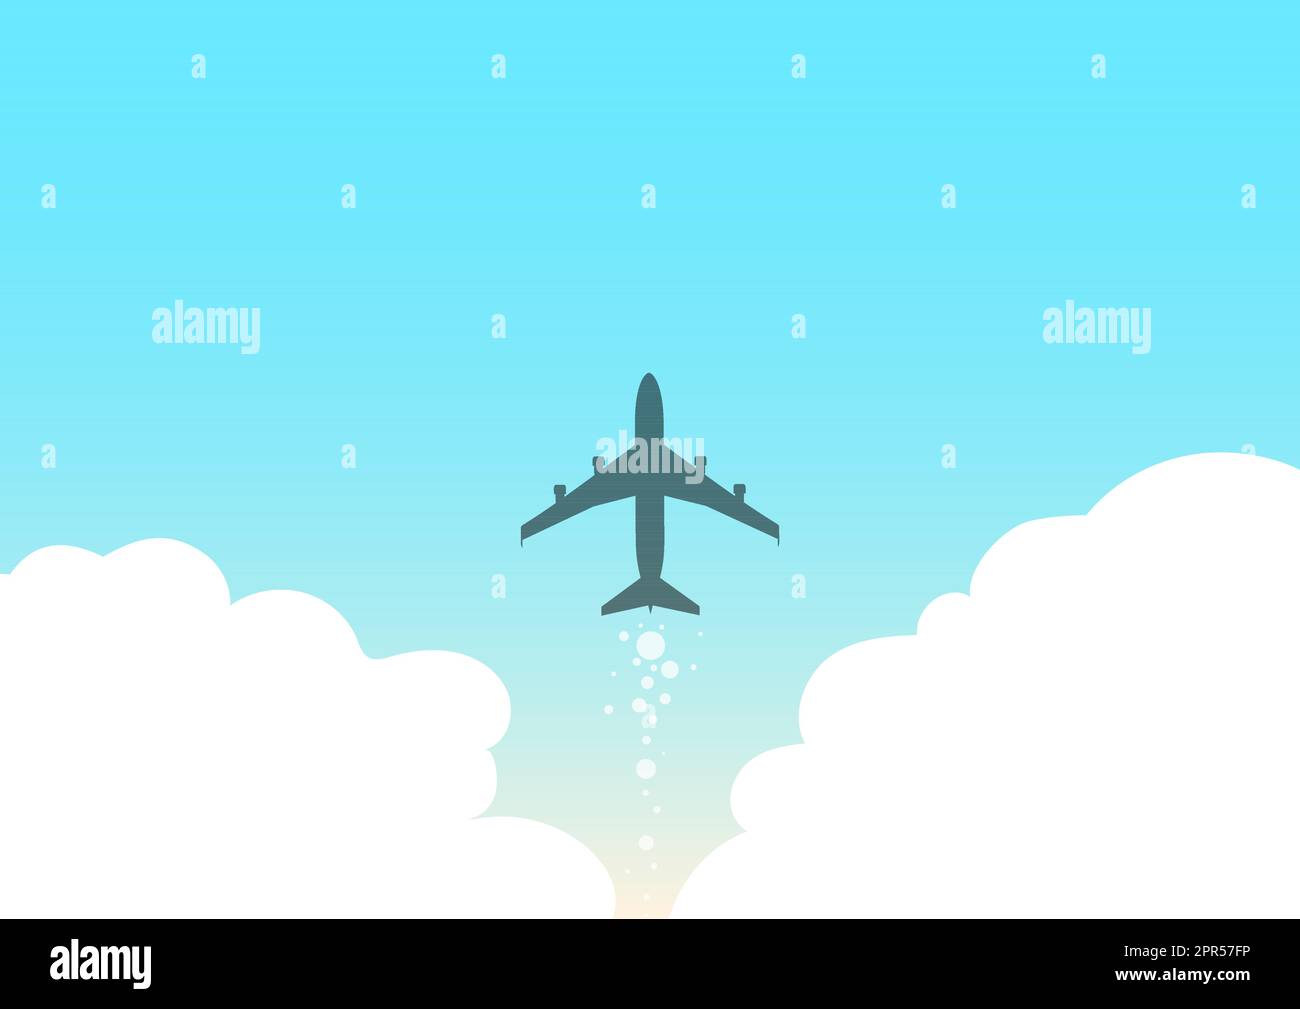 Illustrazione di Airplane che lancia Fast Straight Up to the Skies. Aircraft Drawing Flying High a Sky. Jet Design galleggiante in aria con nuvole. Illustrazione Vettoriale